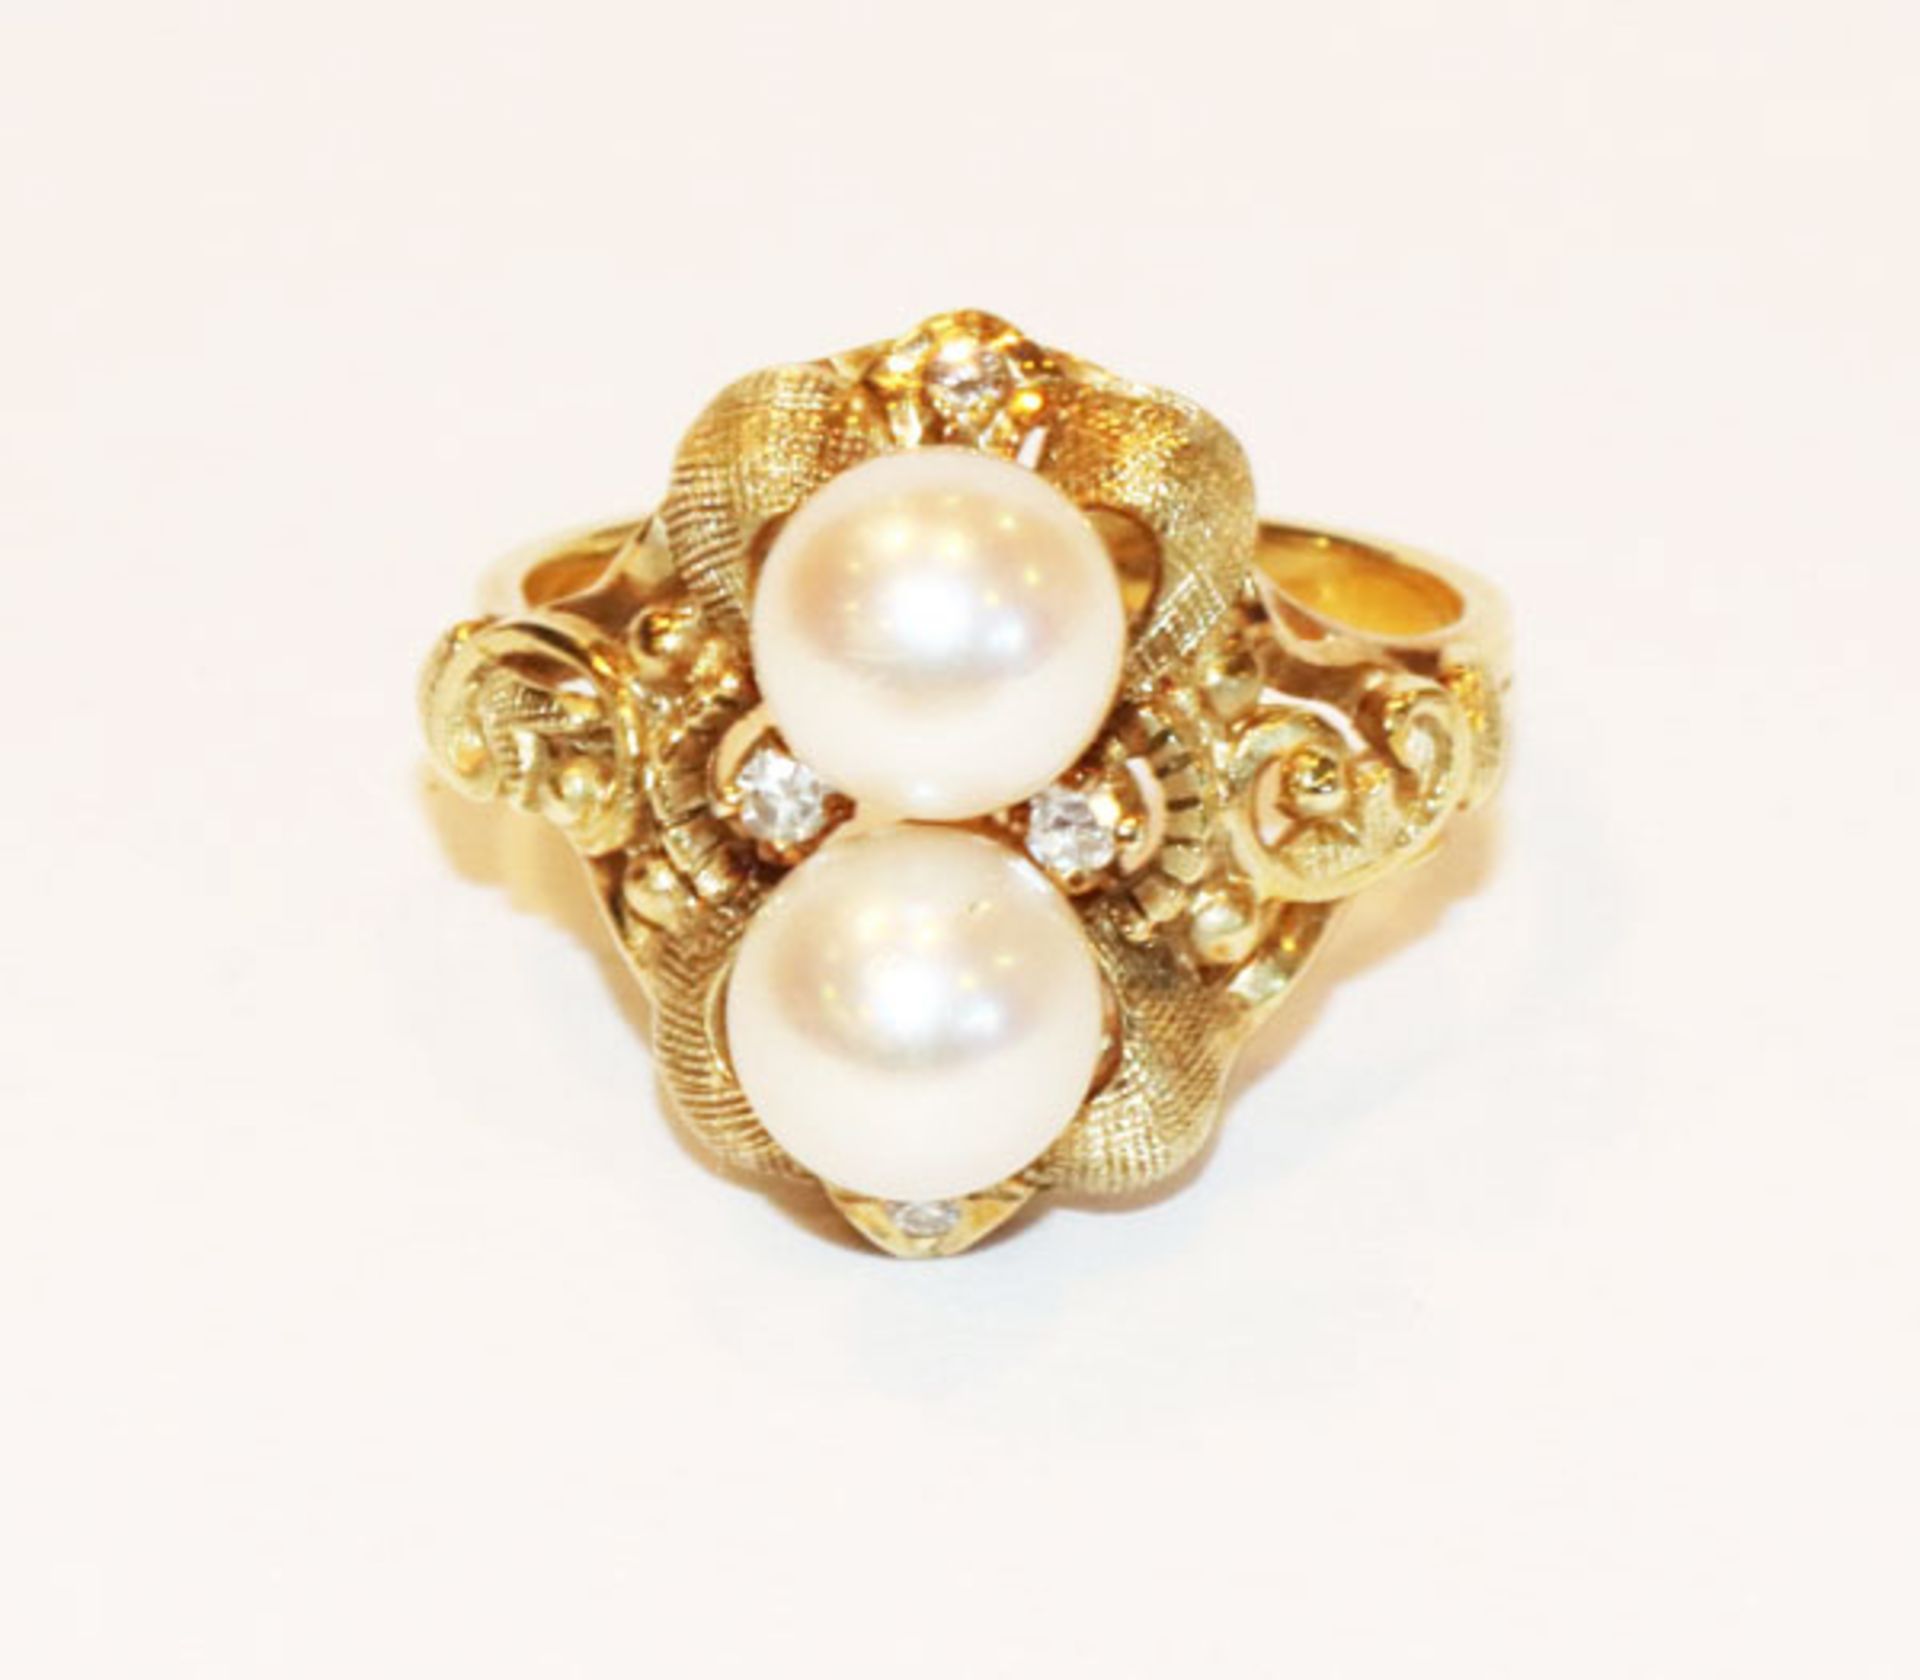 14 k Gelbgold Ring mit 2 Perlen und 4 Brillanten, fein reliefiert und teils mattiert, 5,7 gr., Gr.